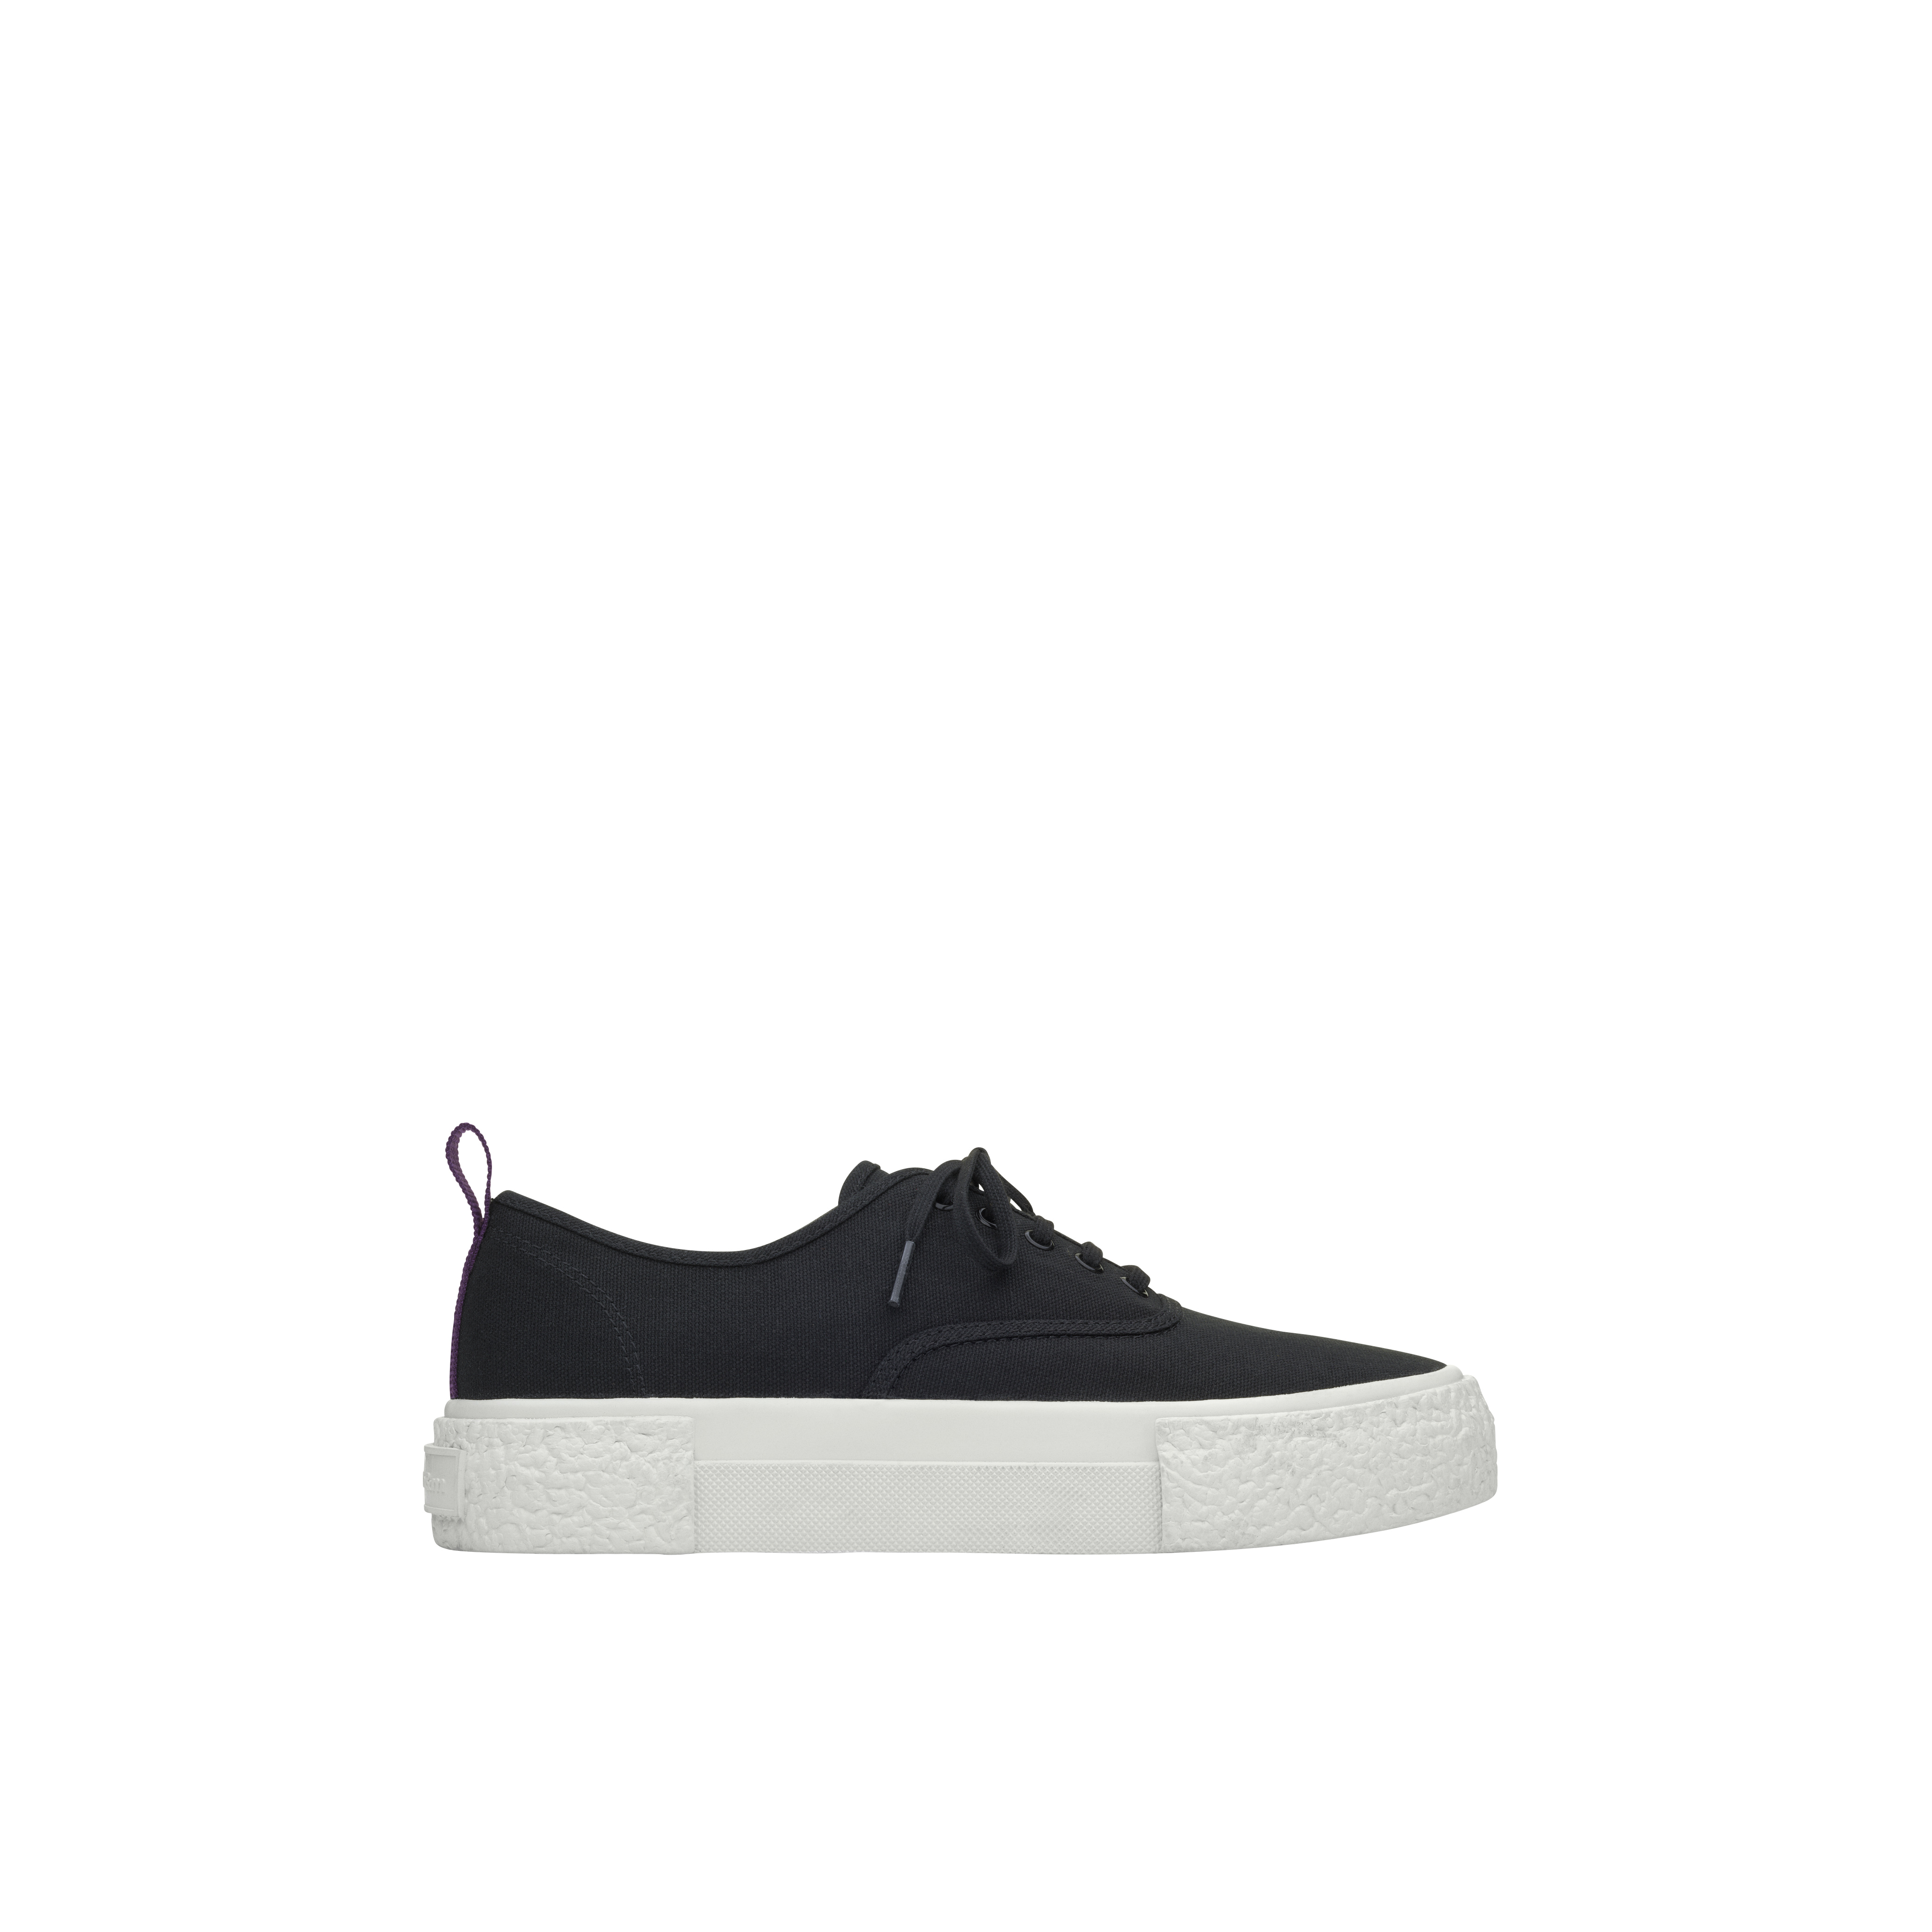 Sneaker (Black) - RM 229.95 - MASSES